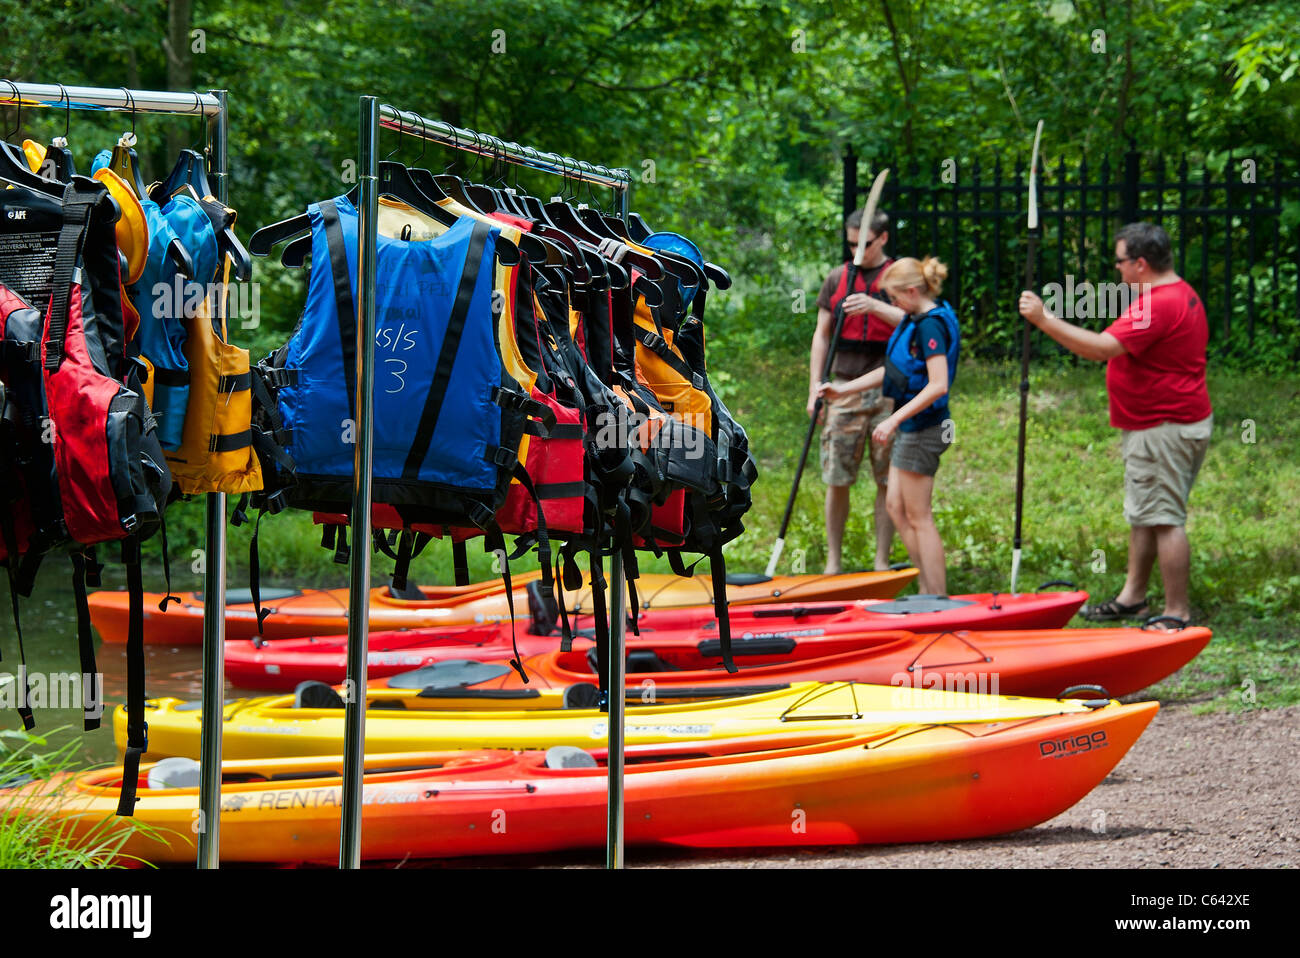 Rental kayak instruction, Smithville, New Jersey Stock Photo